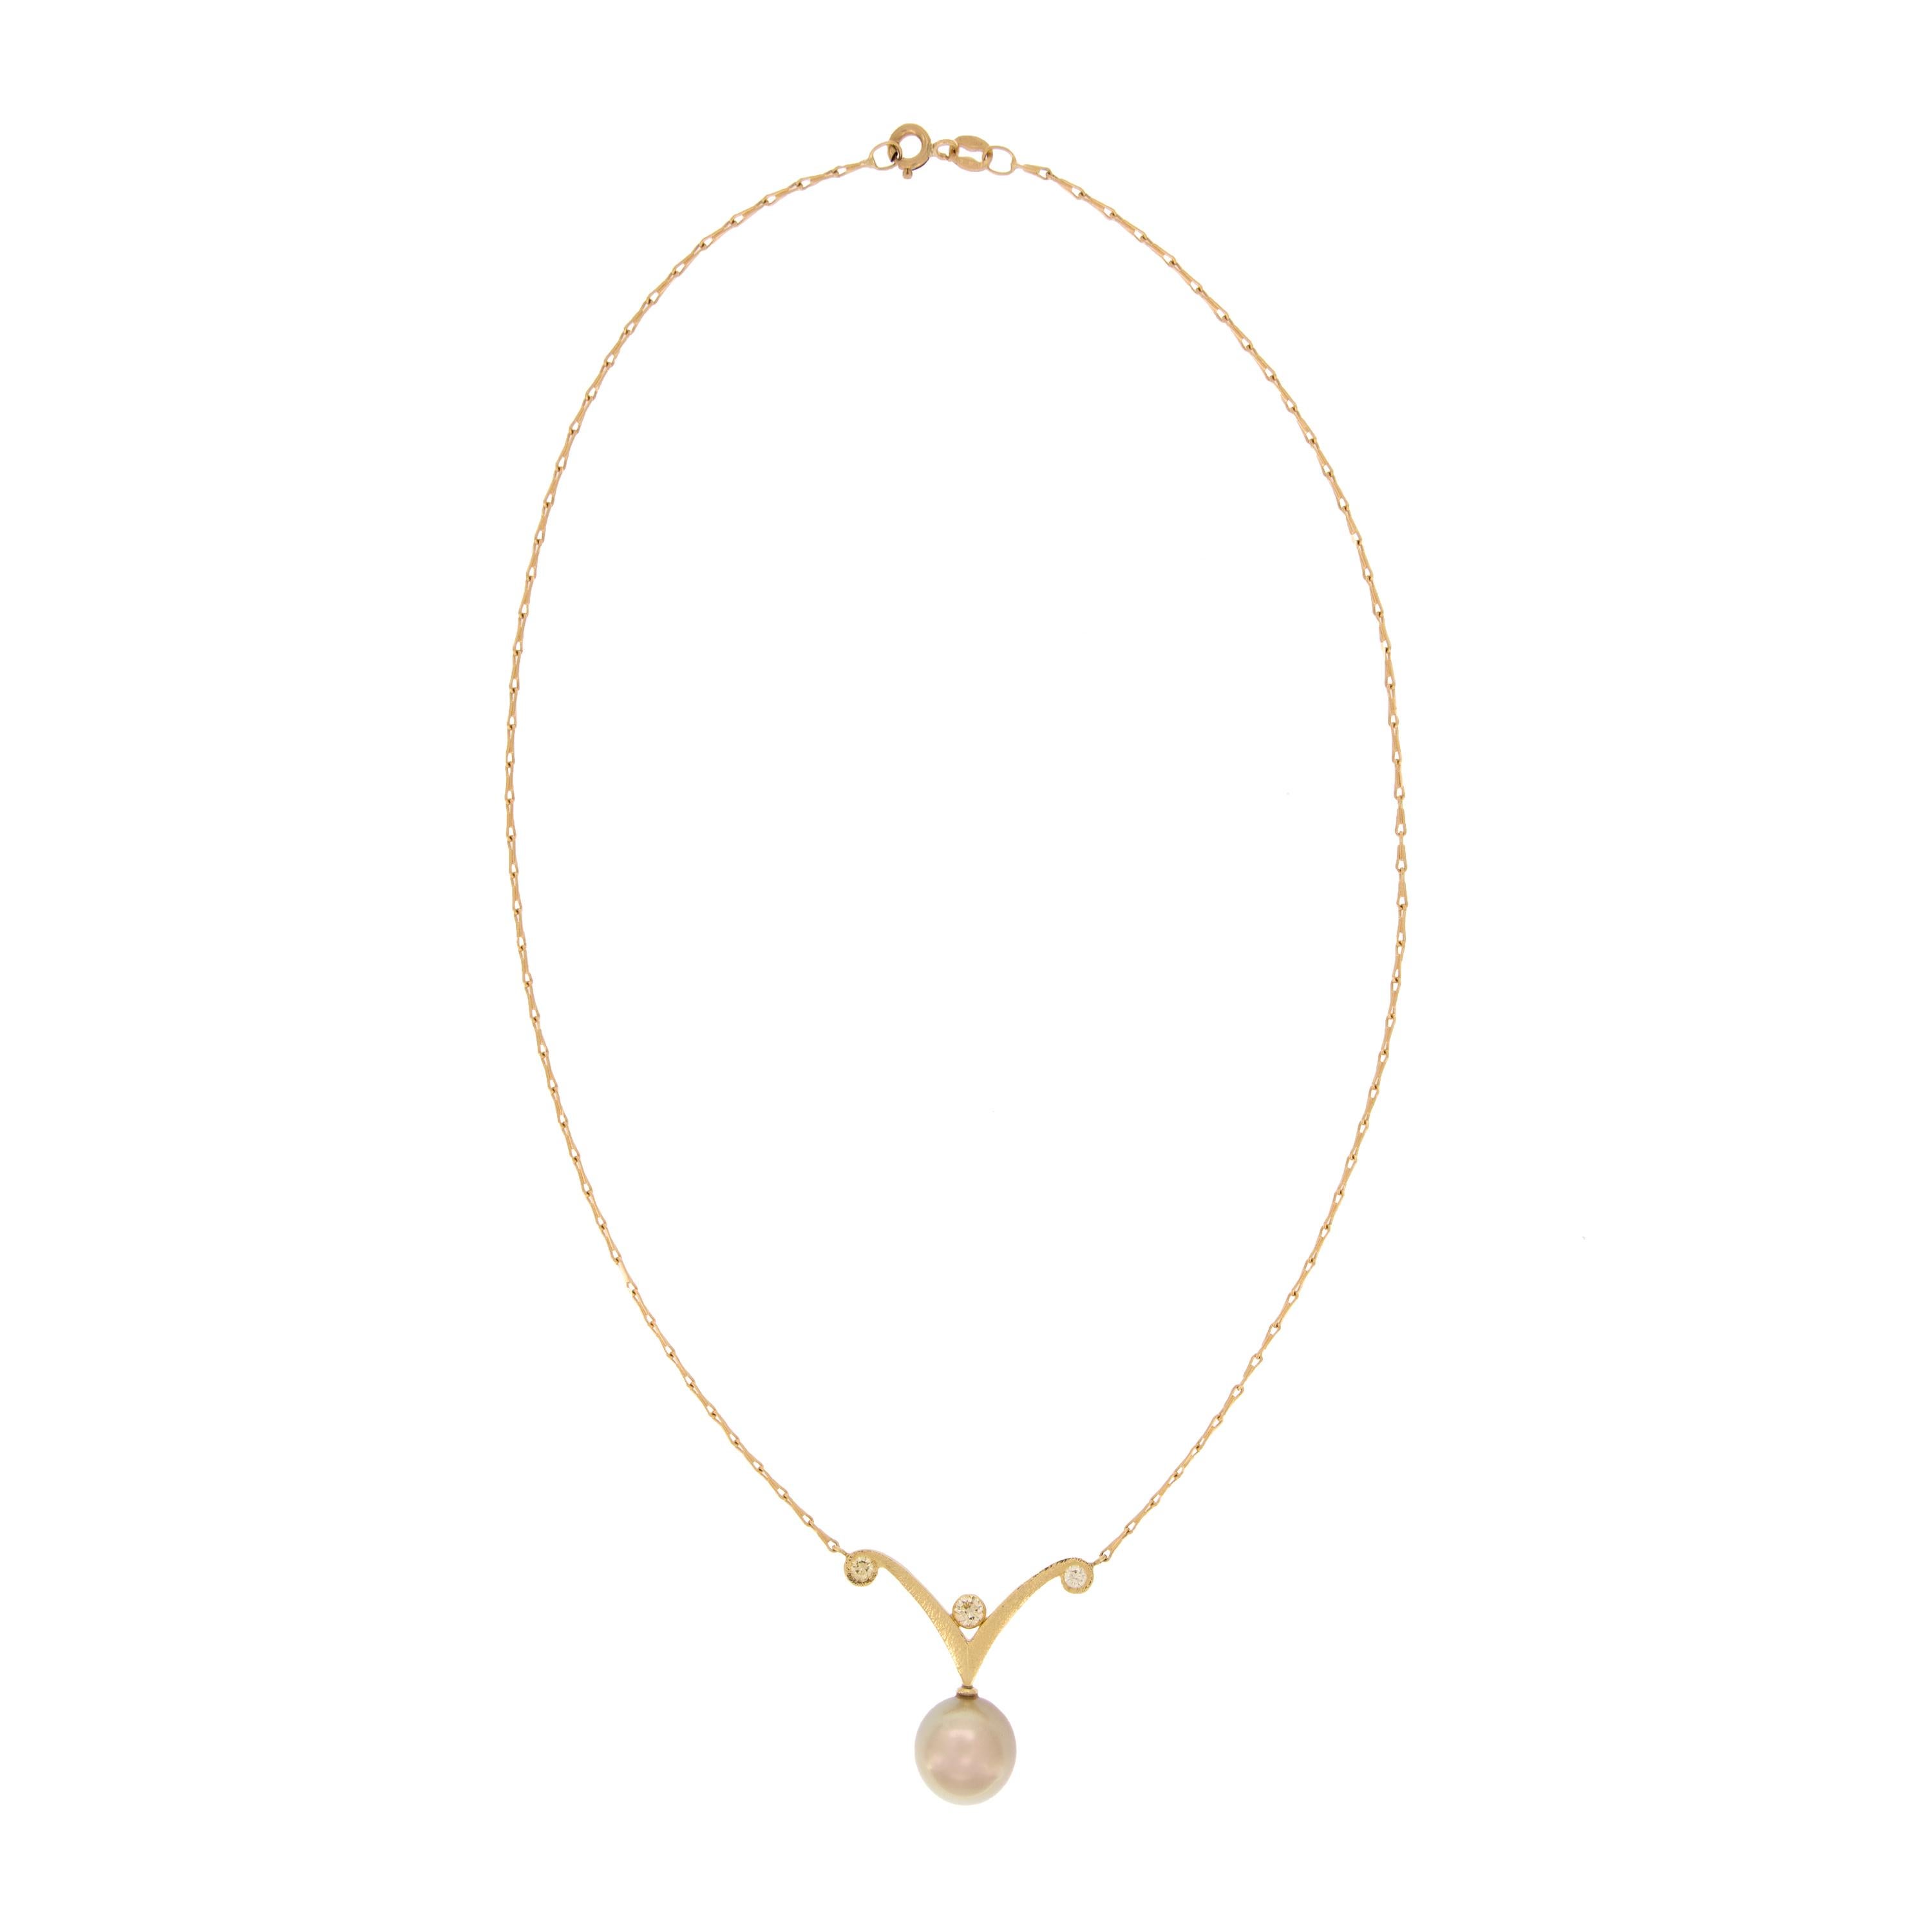 Das schlichte Perlen- und Diamantencollier im Scroll-Design zeigt eine goldene 11,3 mm große Perle mit rosafarbenen Obertönen, die an einer 18-karätigen Gerstenkornkette aus 18 Karat Gelbgold hängt. Der Anhänger ist 1,25